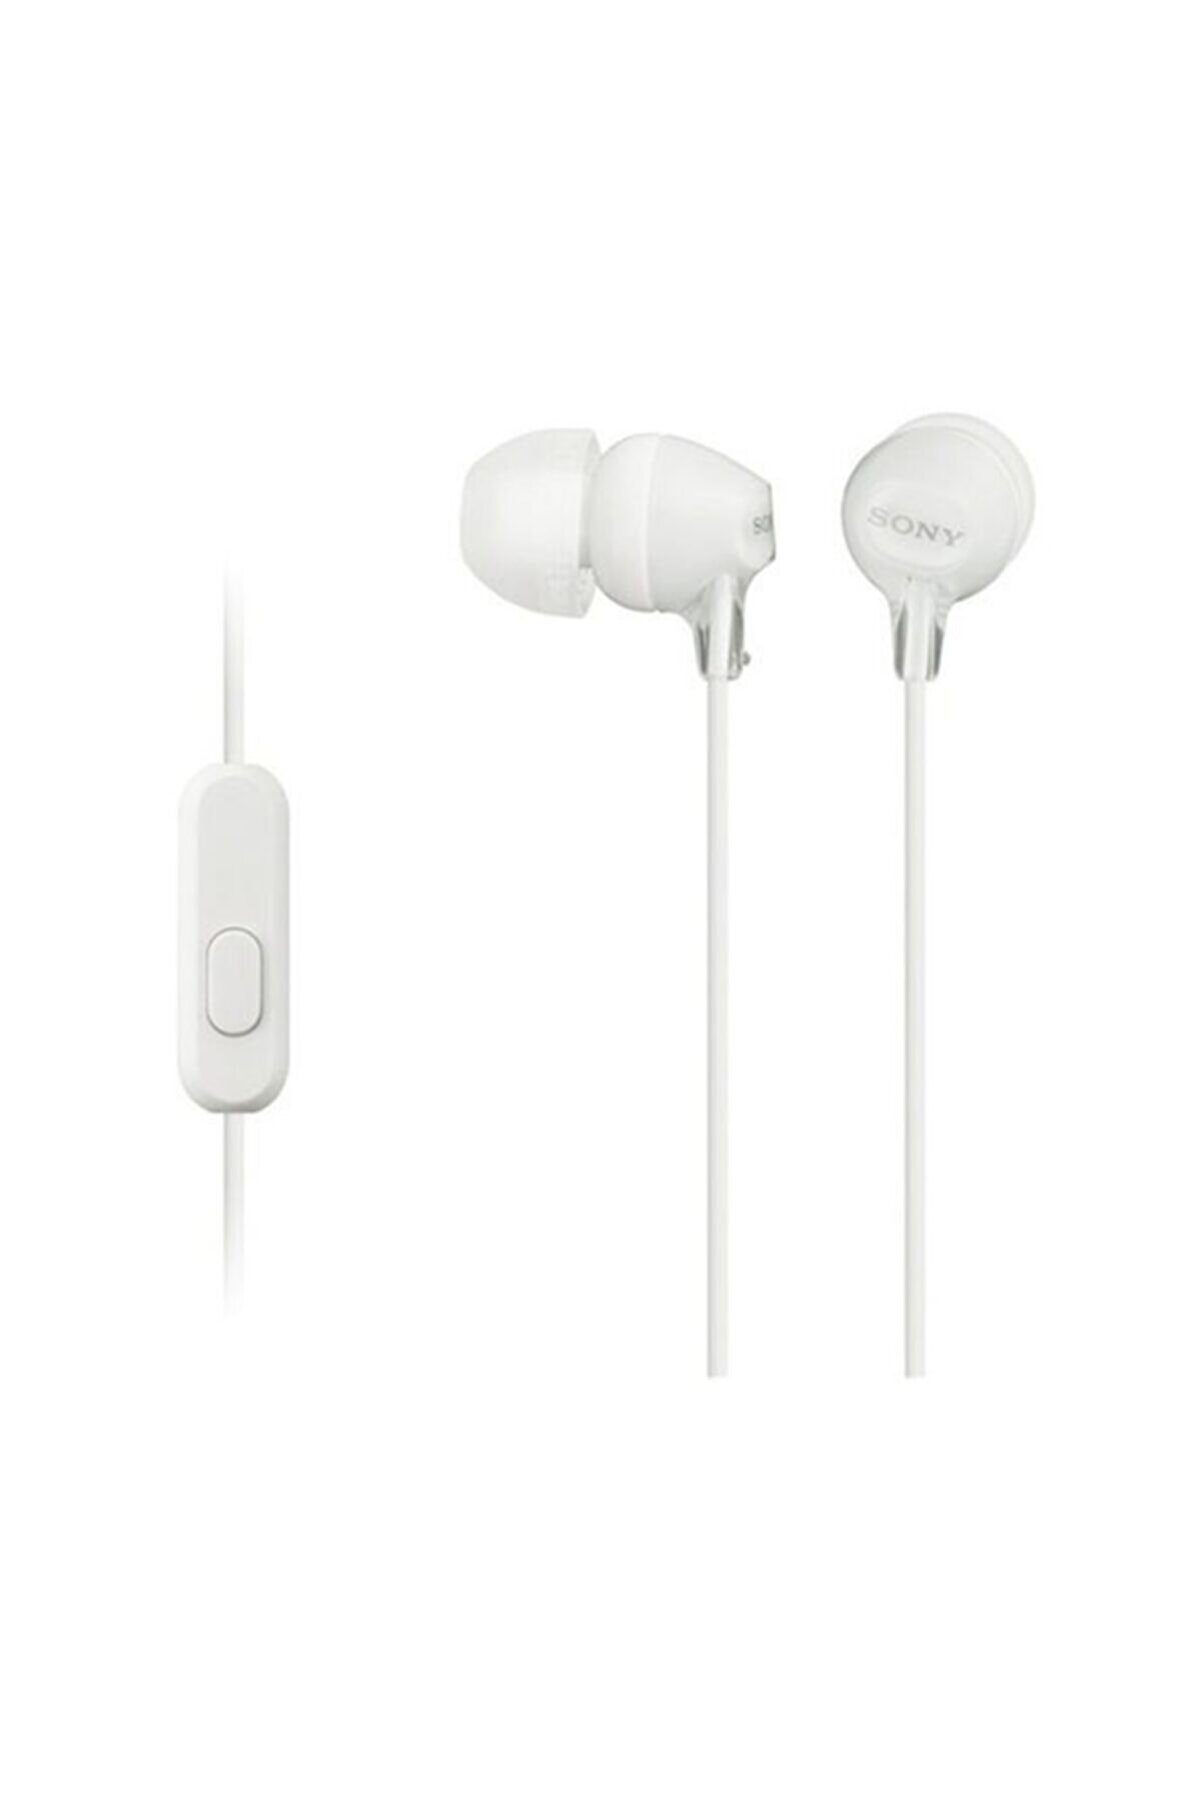 Sony MDR-EX15APW Kablo Kulakiçi Kulaklık Mikrofonlu Beyaz